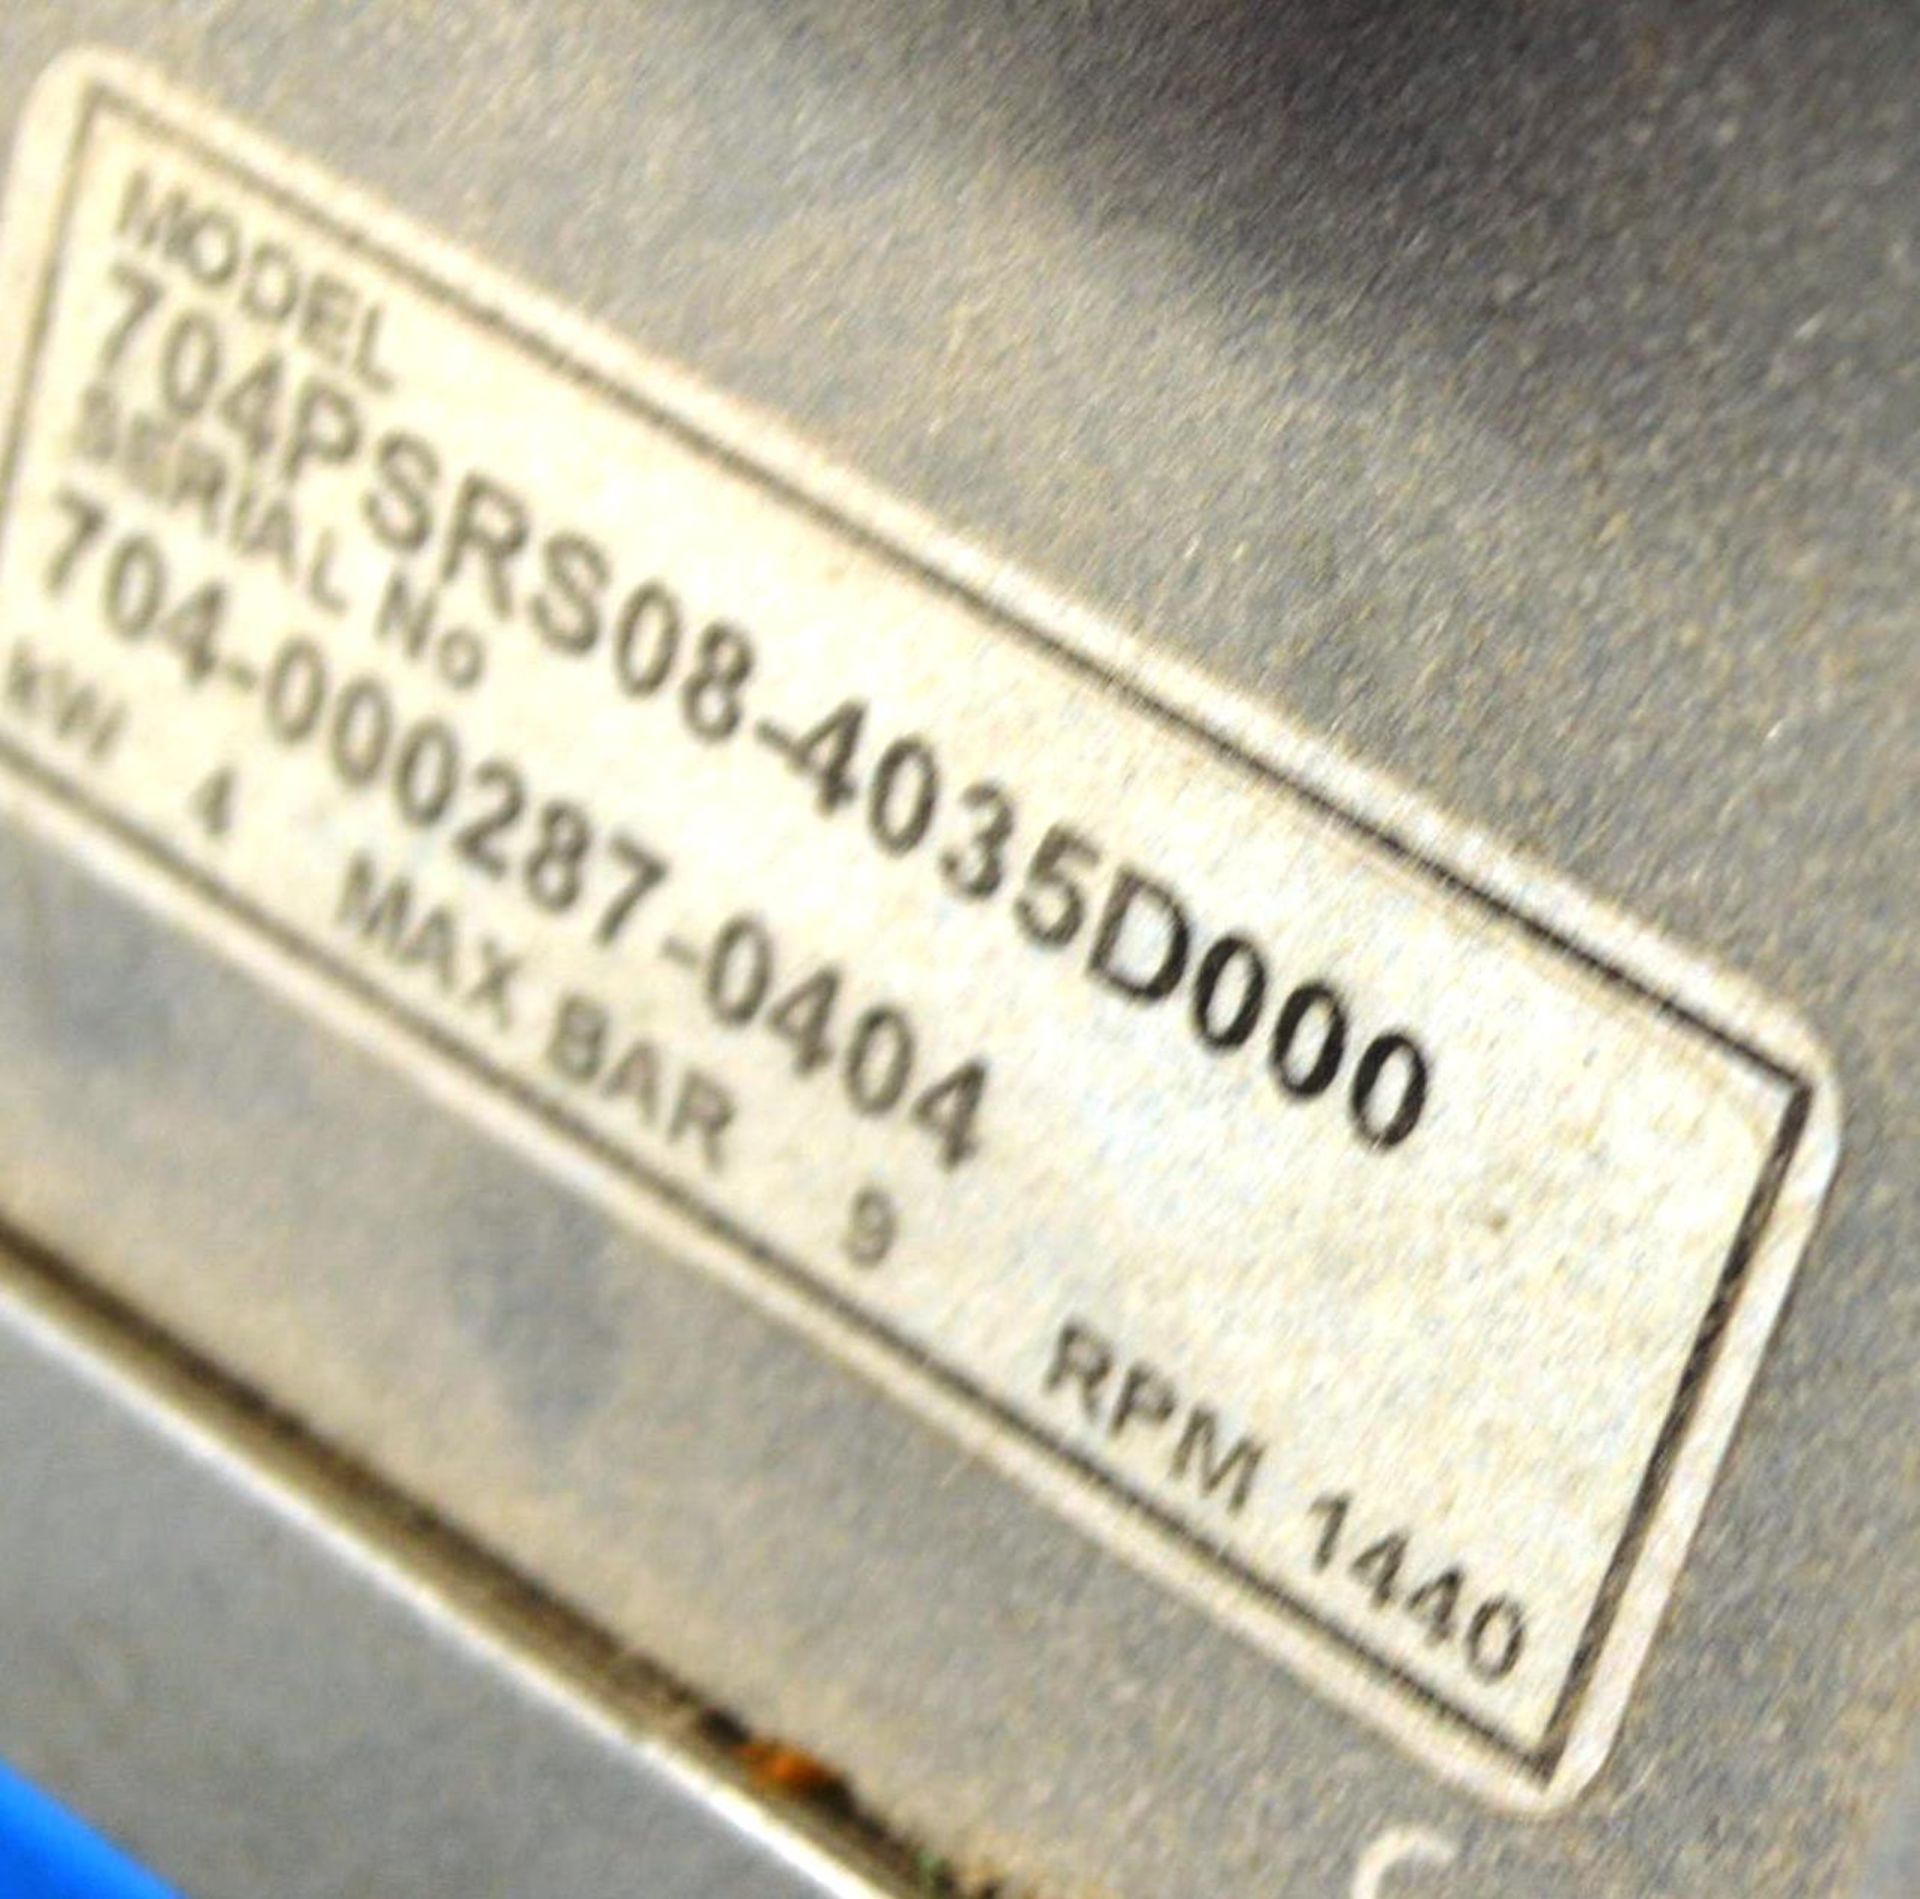 CompAir 704PSR08-4035D000 Horizontal Receiver Mounted Air Compressor, serial no. 704-000 287 - - Bild 2 aus 2